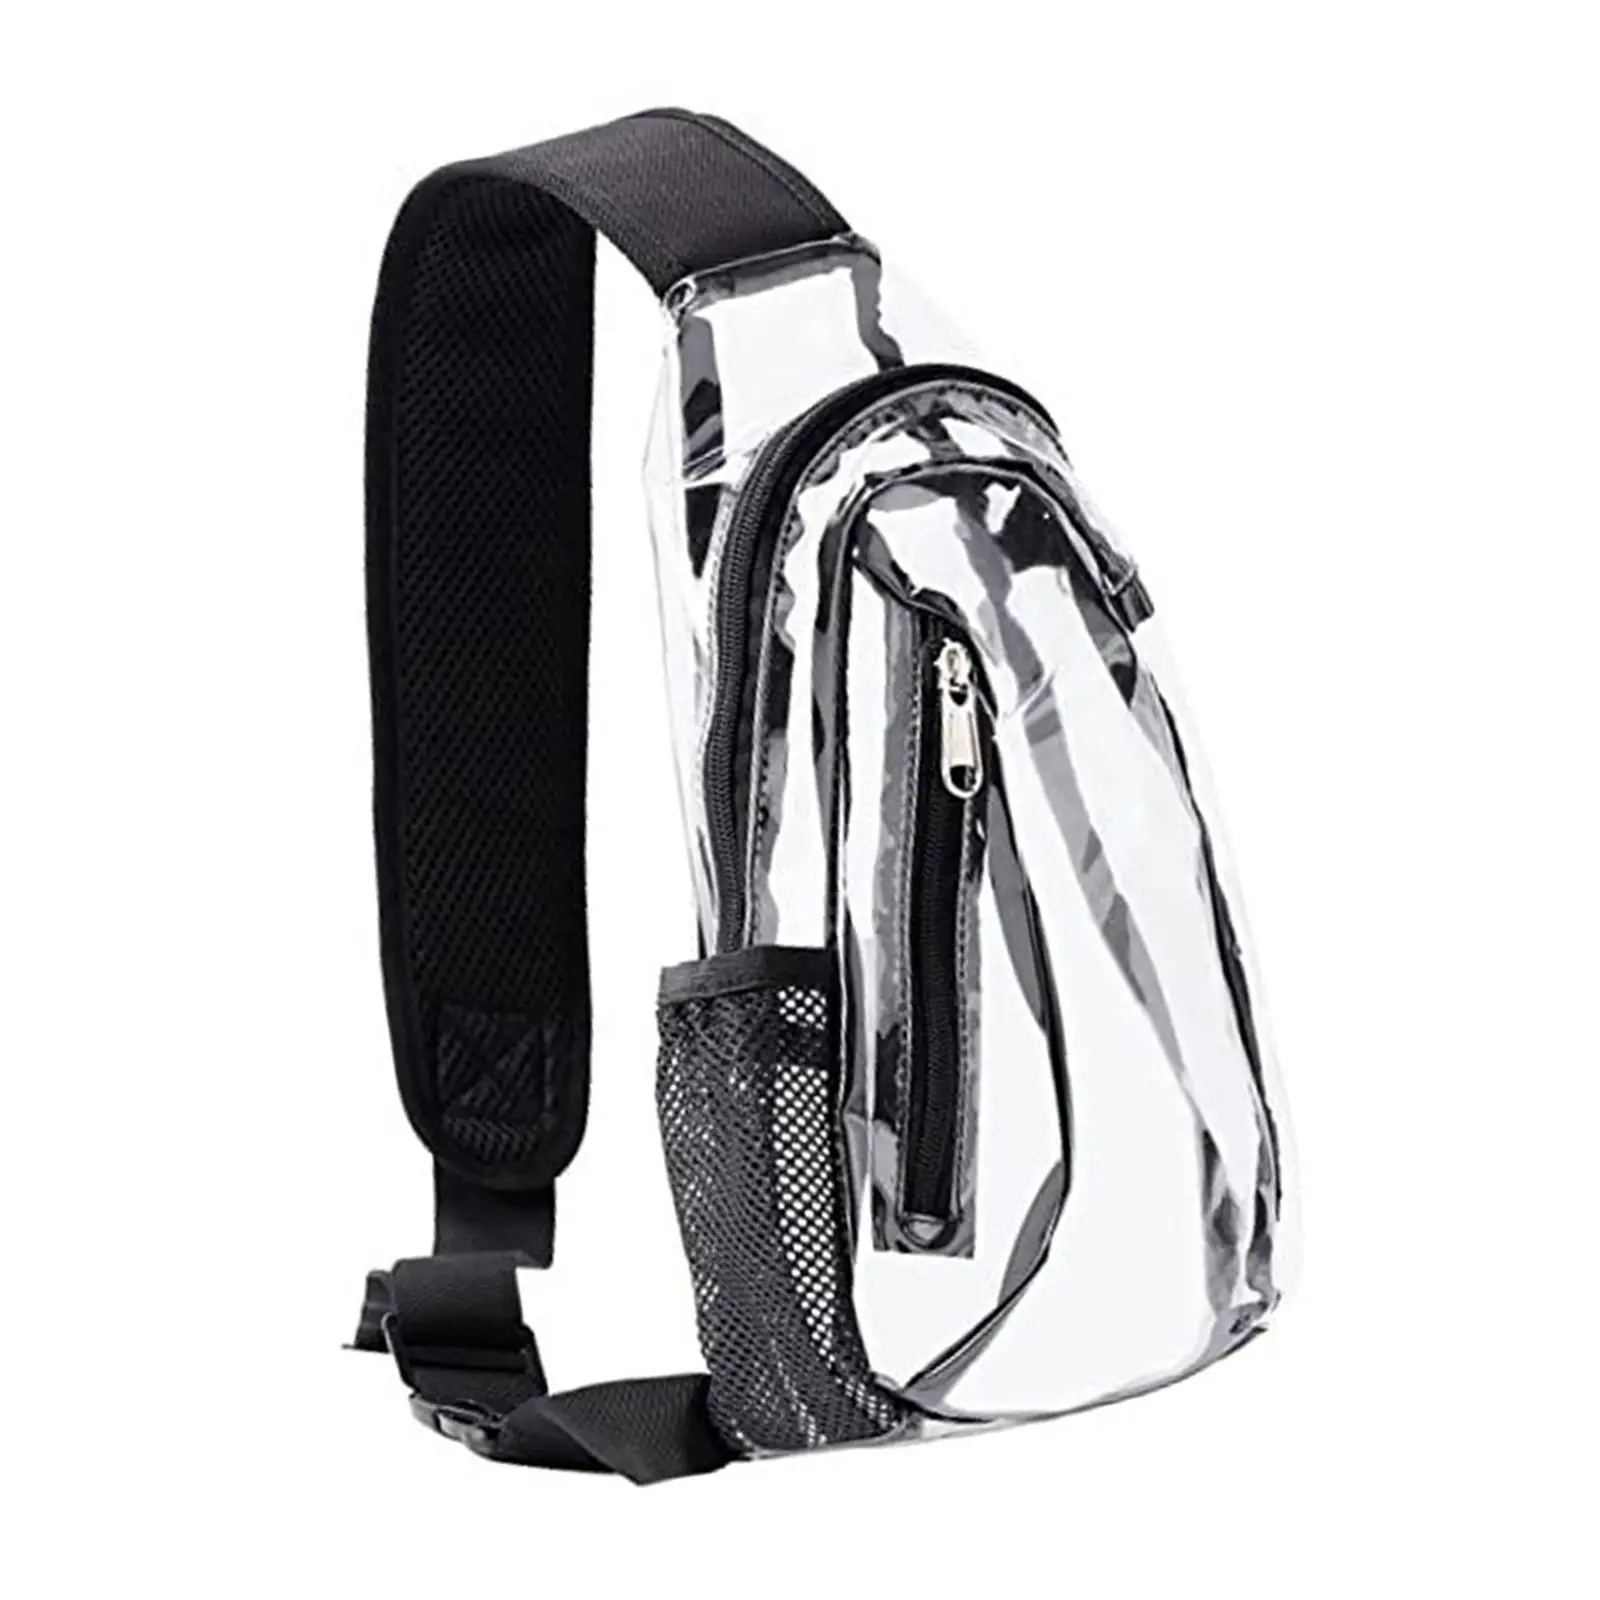 Clear Bag Adjustable Shoulder Strap Handbag Purse for Sports Men Beach